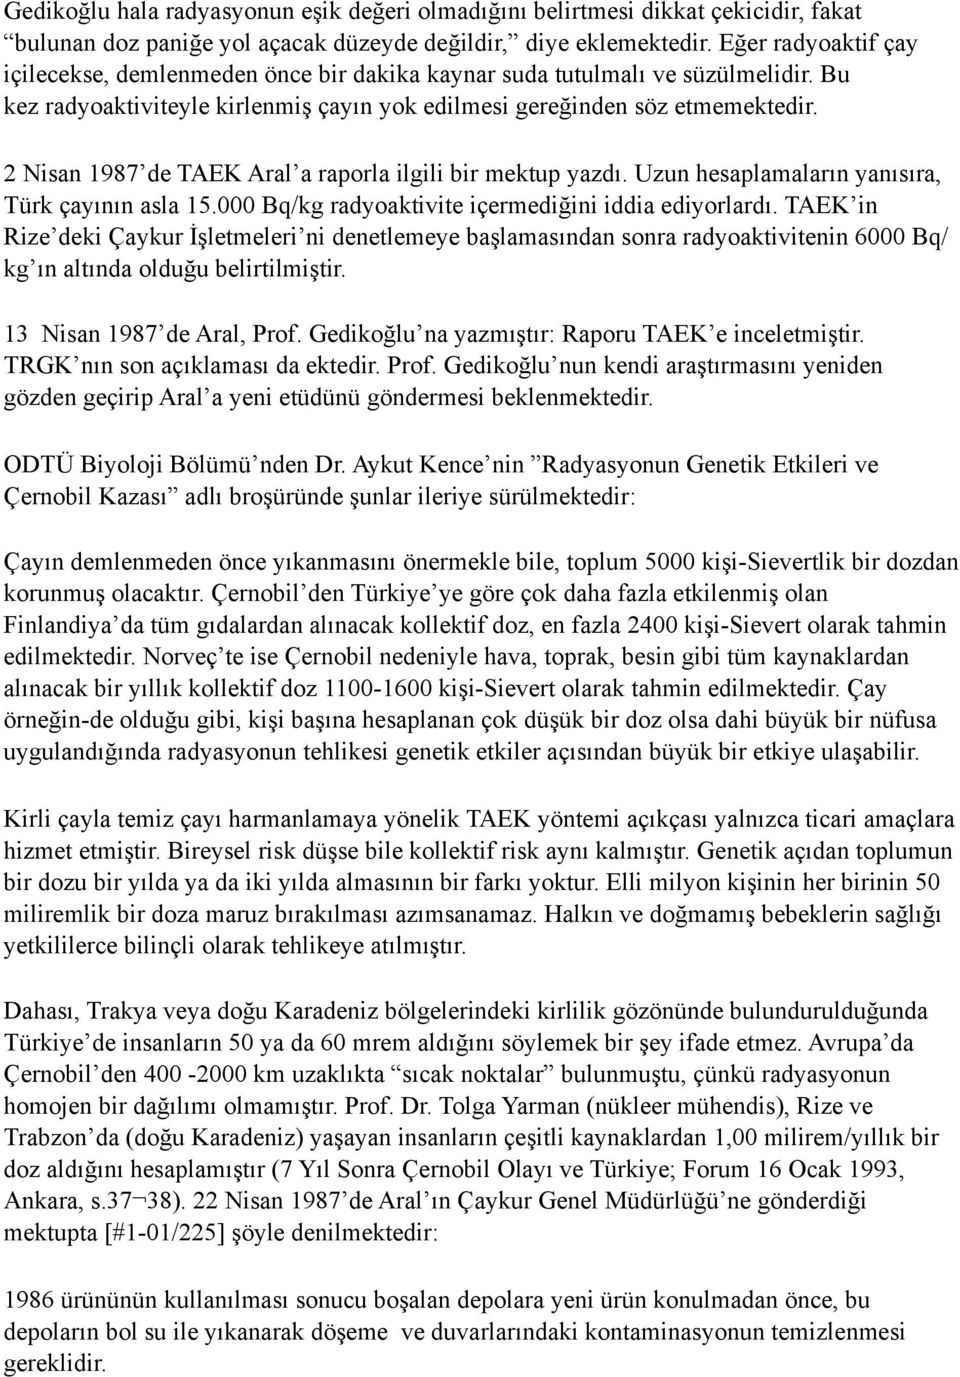 2 Nisan 1987 de TAEK Aral a raporla ilgili bir mektup yazdı. Uzun hesaplamaların yanısıra, Türk çayının asla 15.000 Bq/kg radyoaktivite içermediğini iddia ediyorlardı.